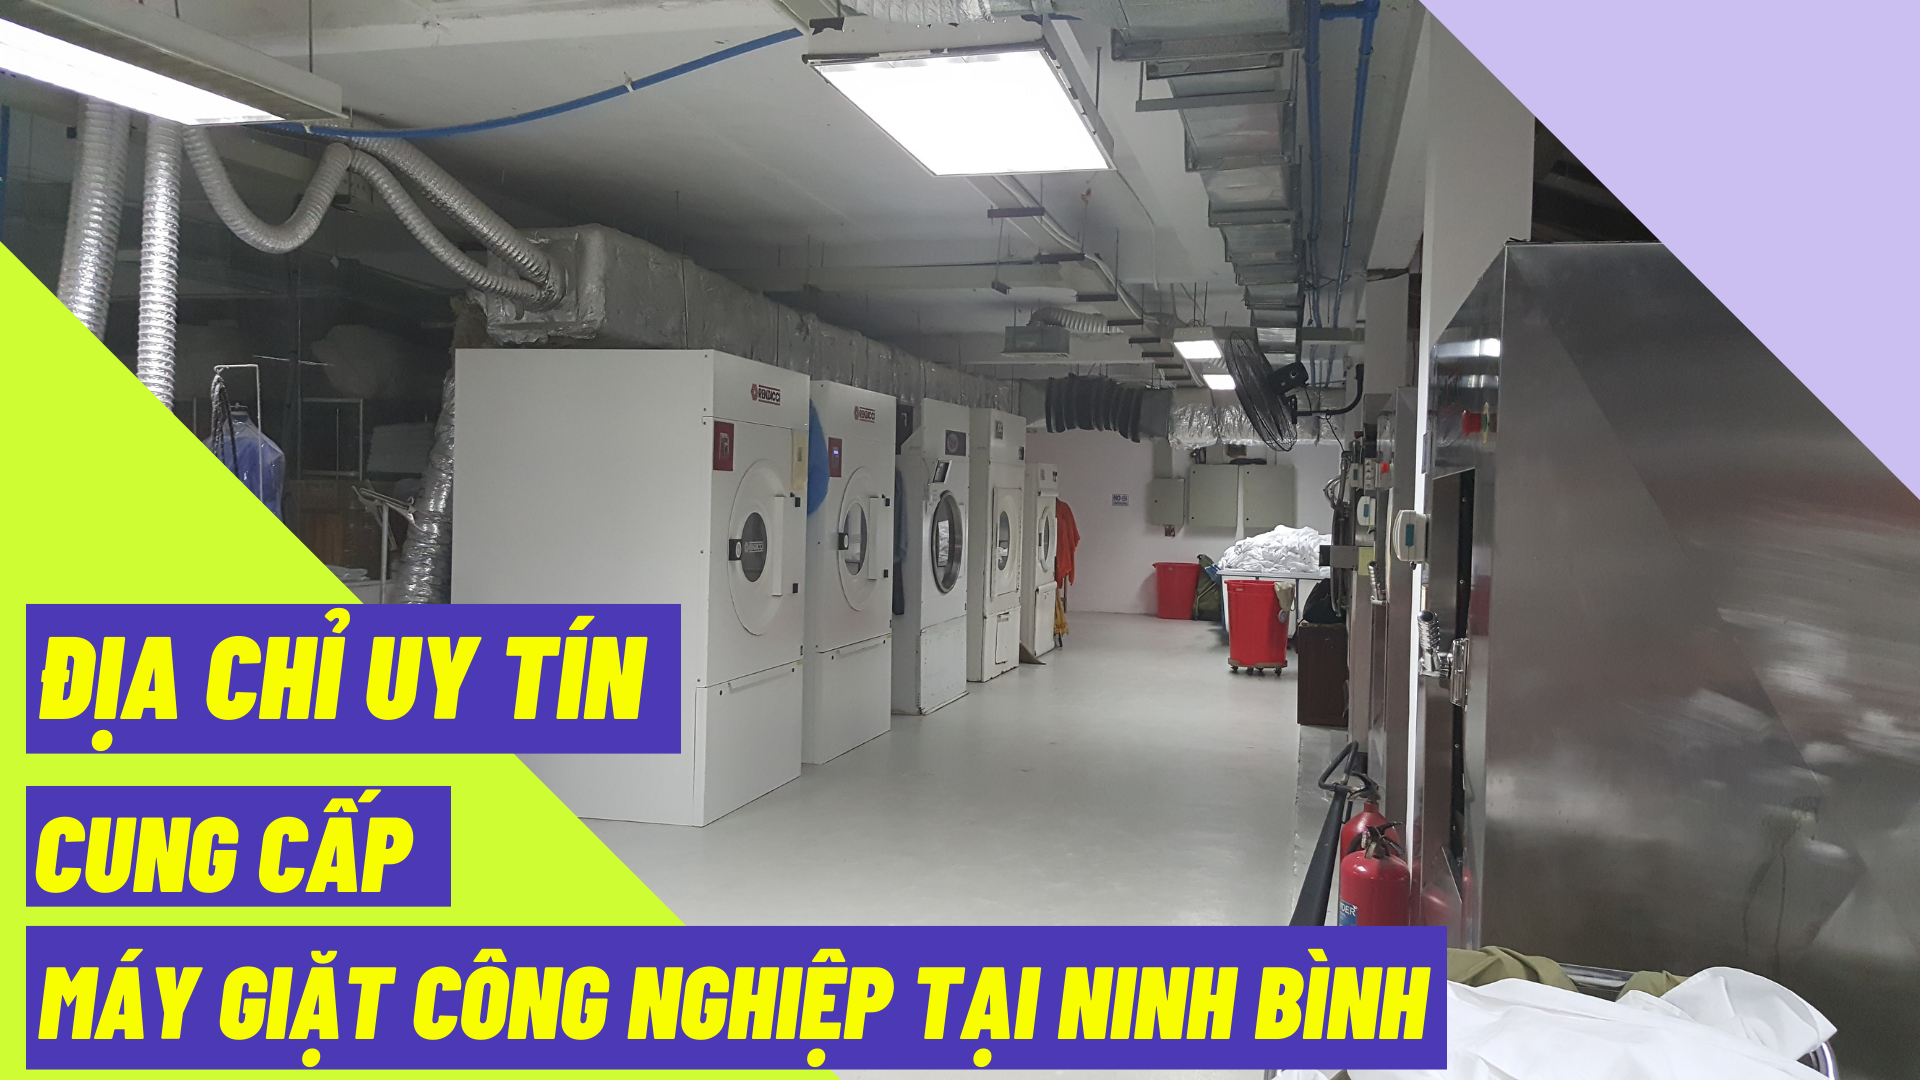 Địa chỉ uy tín cung cấp máy giặt công nghiệp tại Ninh Bình